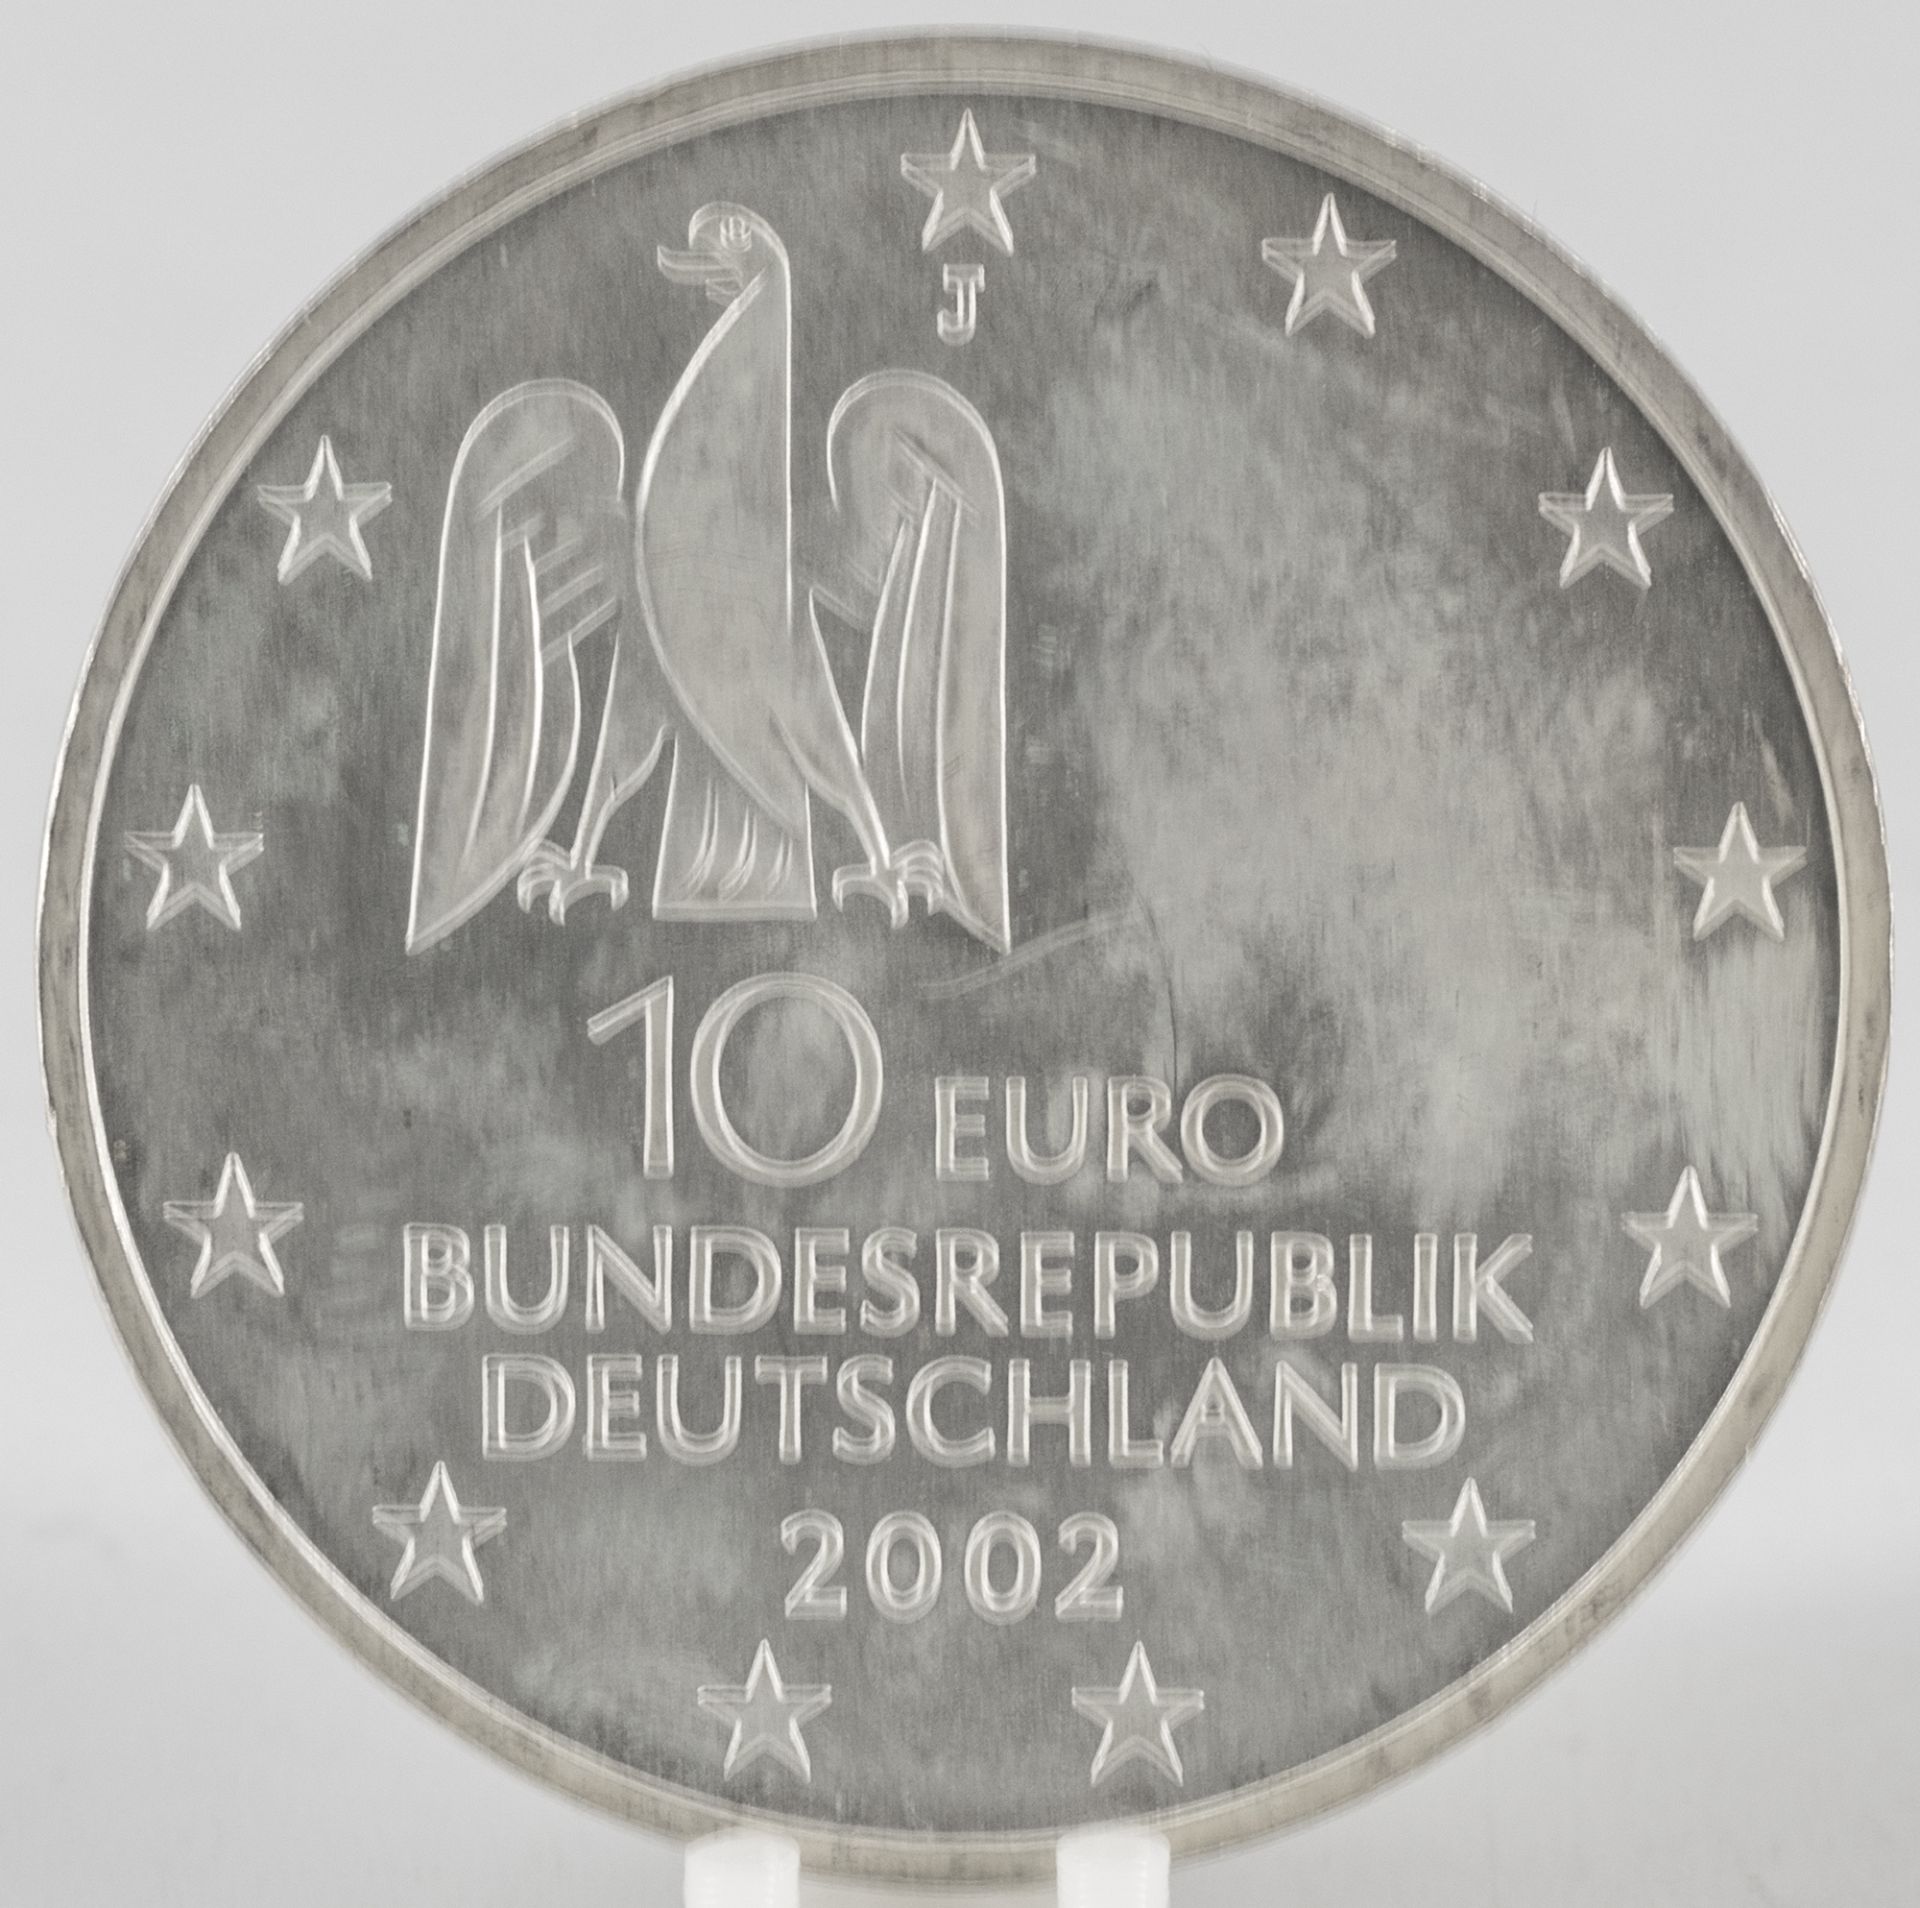 Deutschland 2002, 10.- Euro - Silbermünze "Documenta Kassel". Silber 925, Gewicht: ca. 18 g. - Image 2 of 2